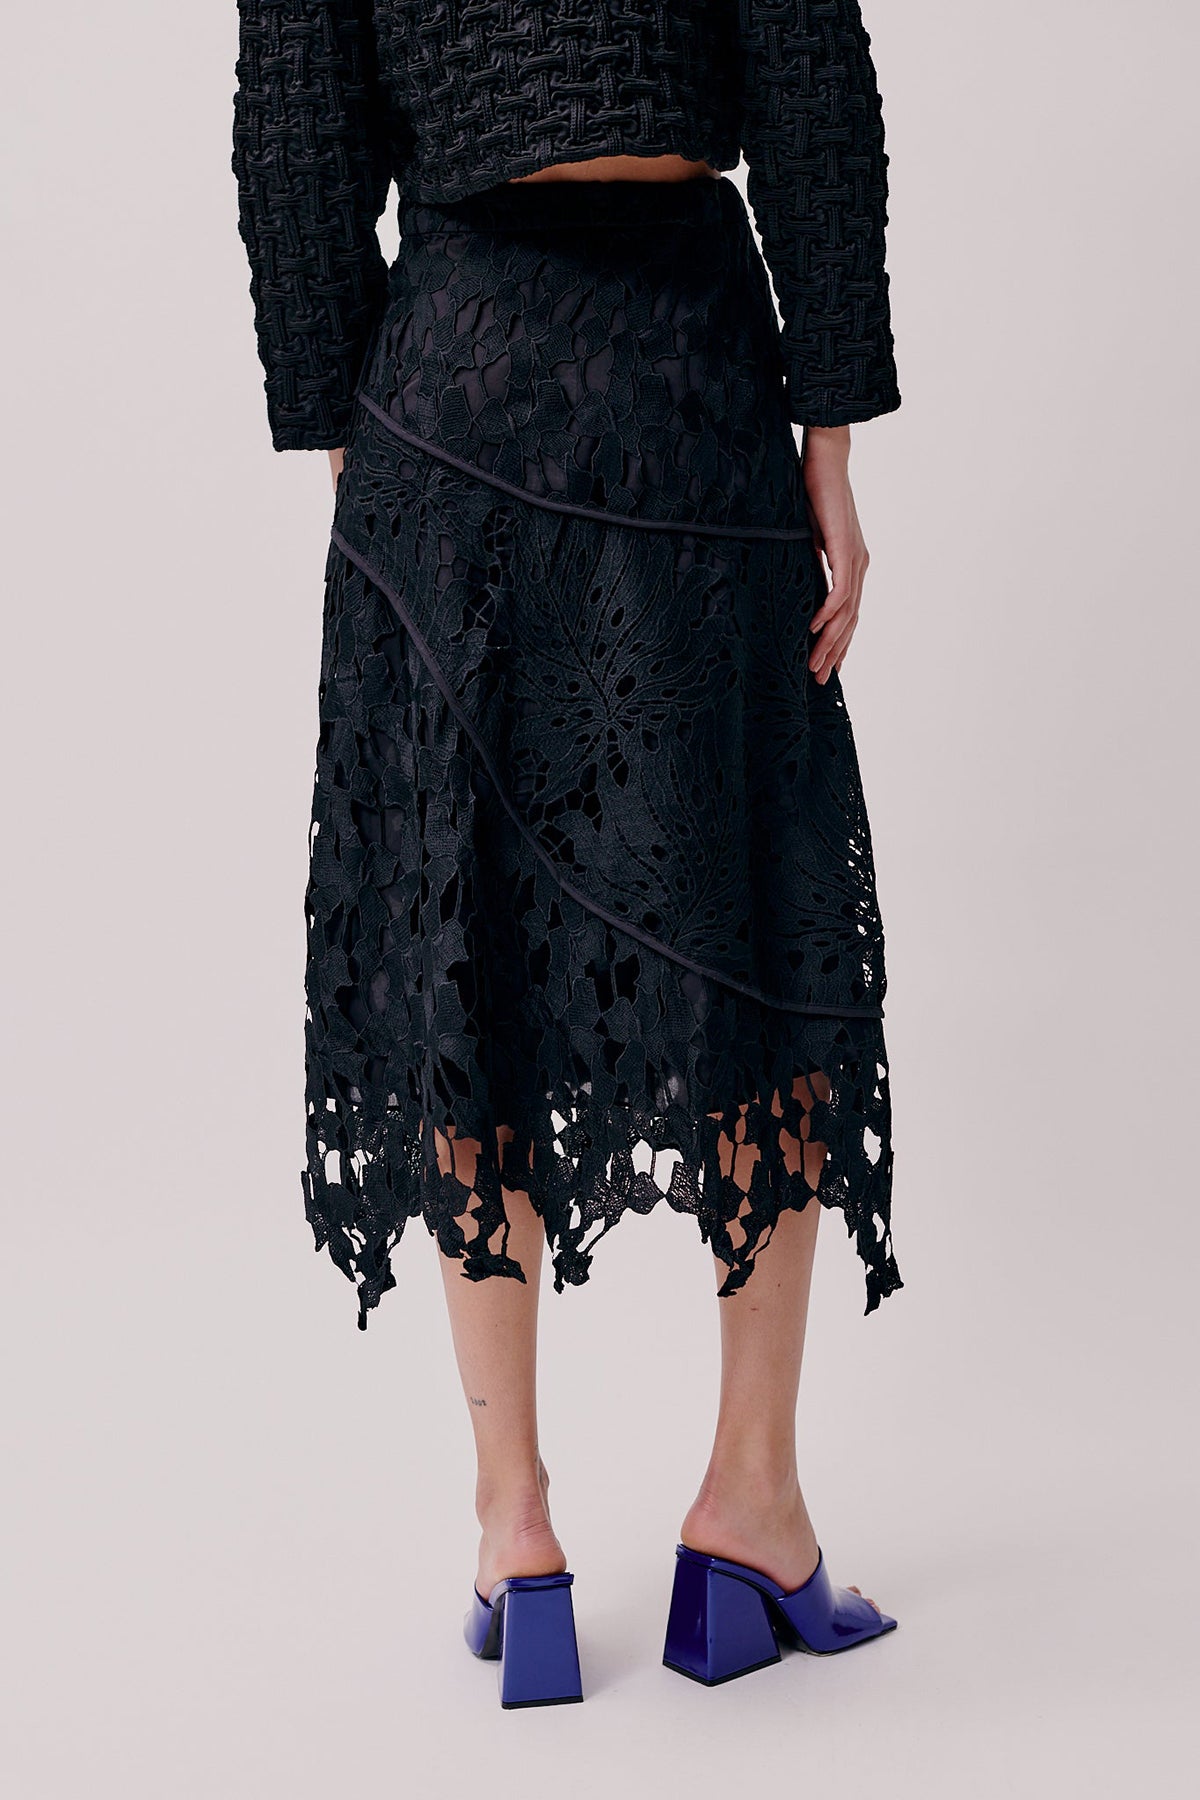 Chloe Skirt - Black Heavy Lace by Hofmann Copenhagen